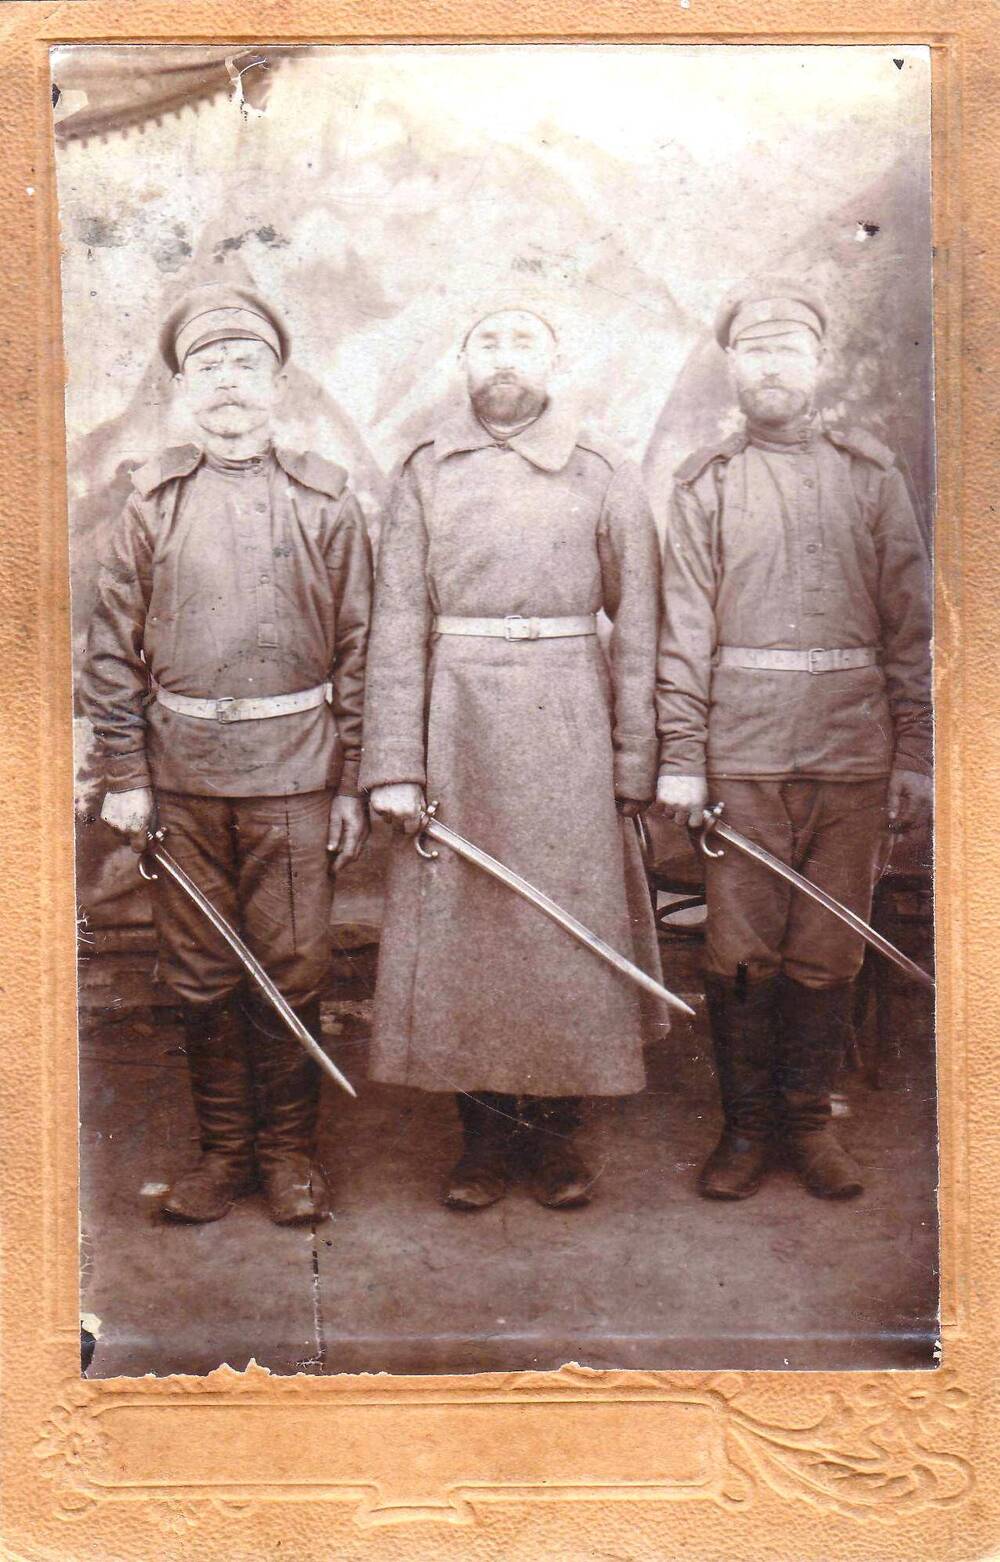 Фото на паспарту, 3 солдата в форме царской армии 1915 г.